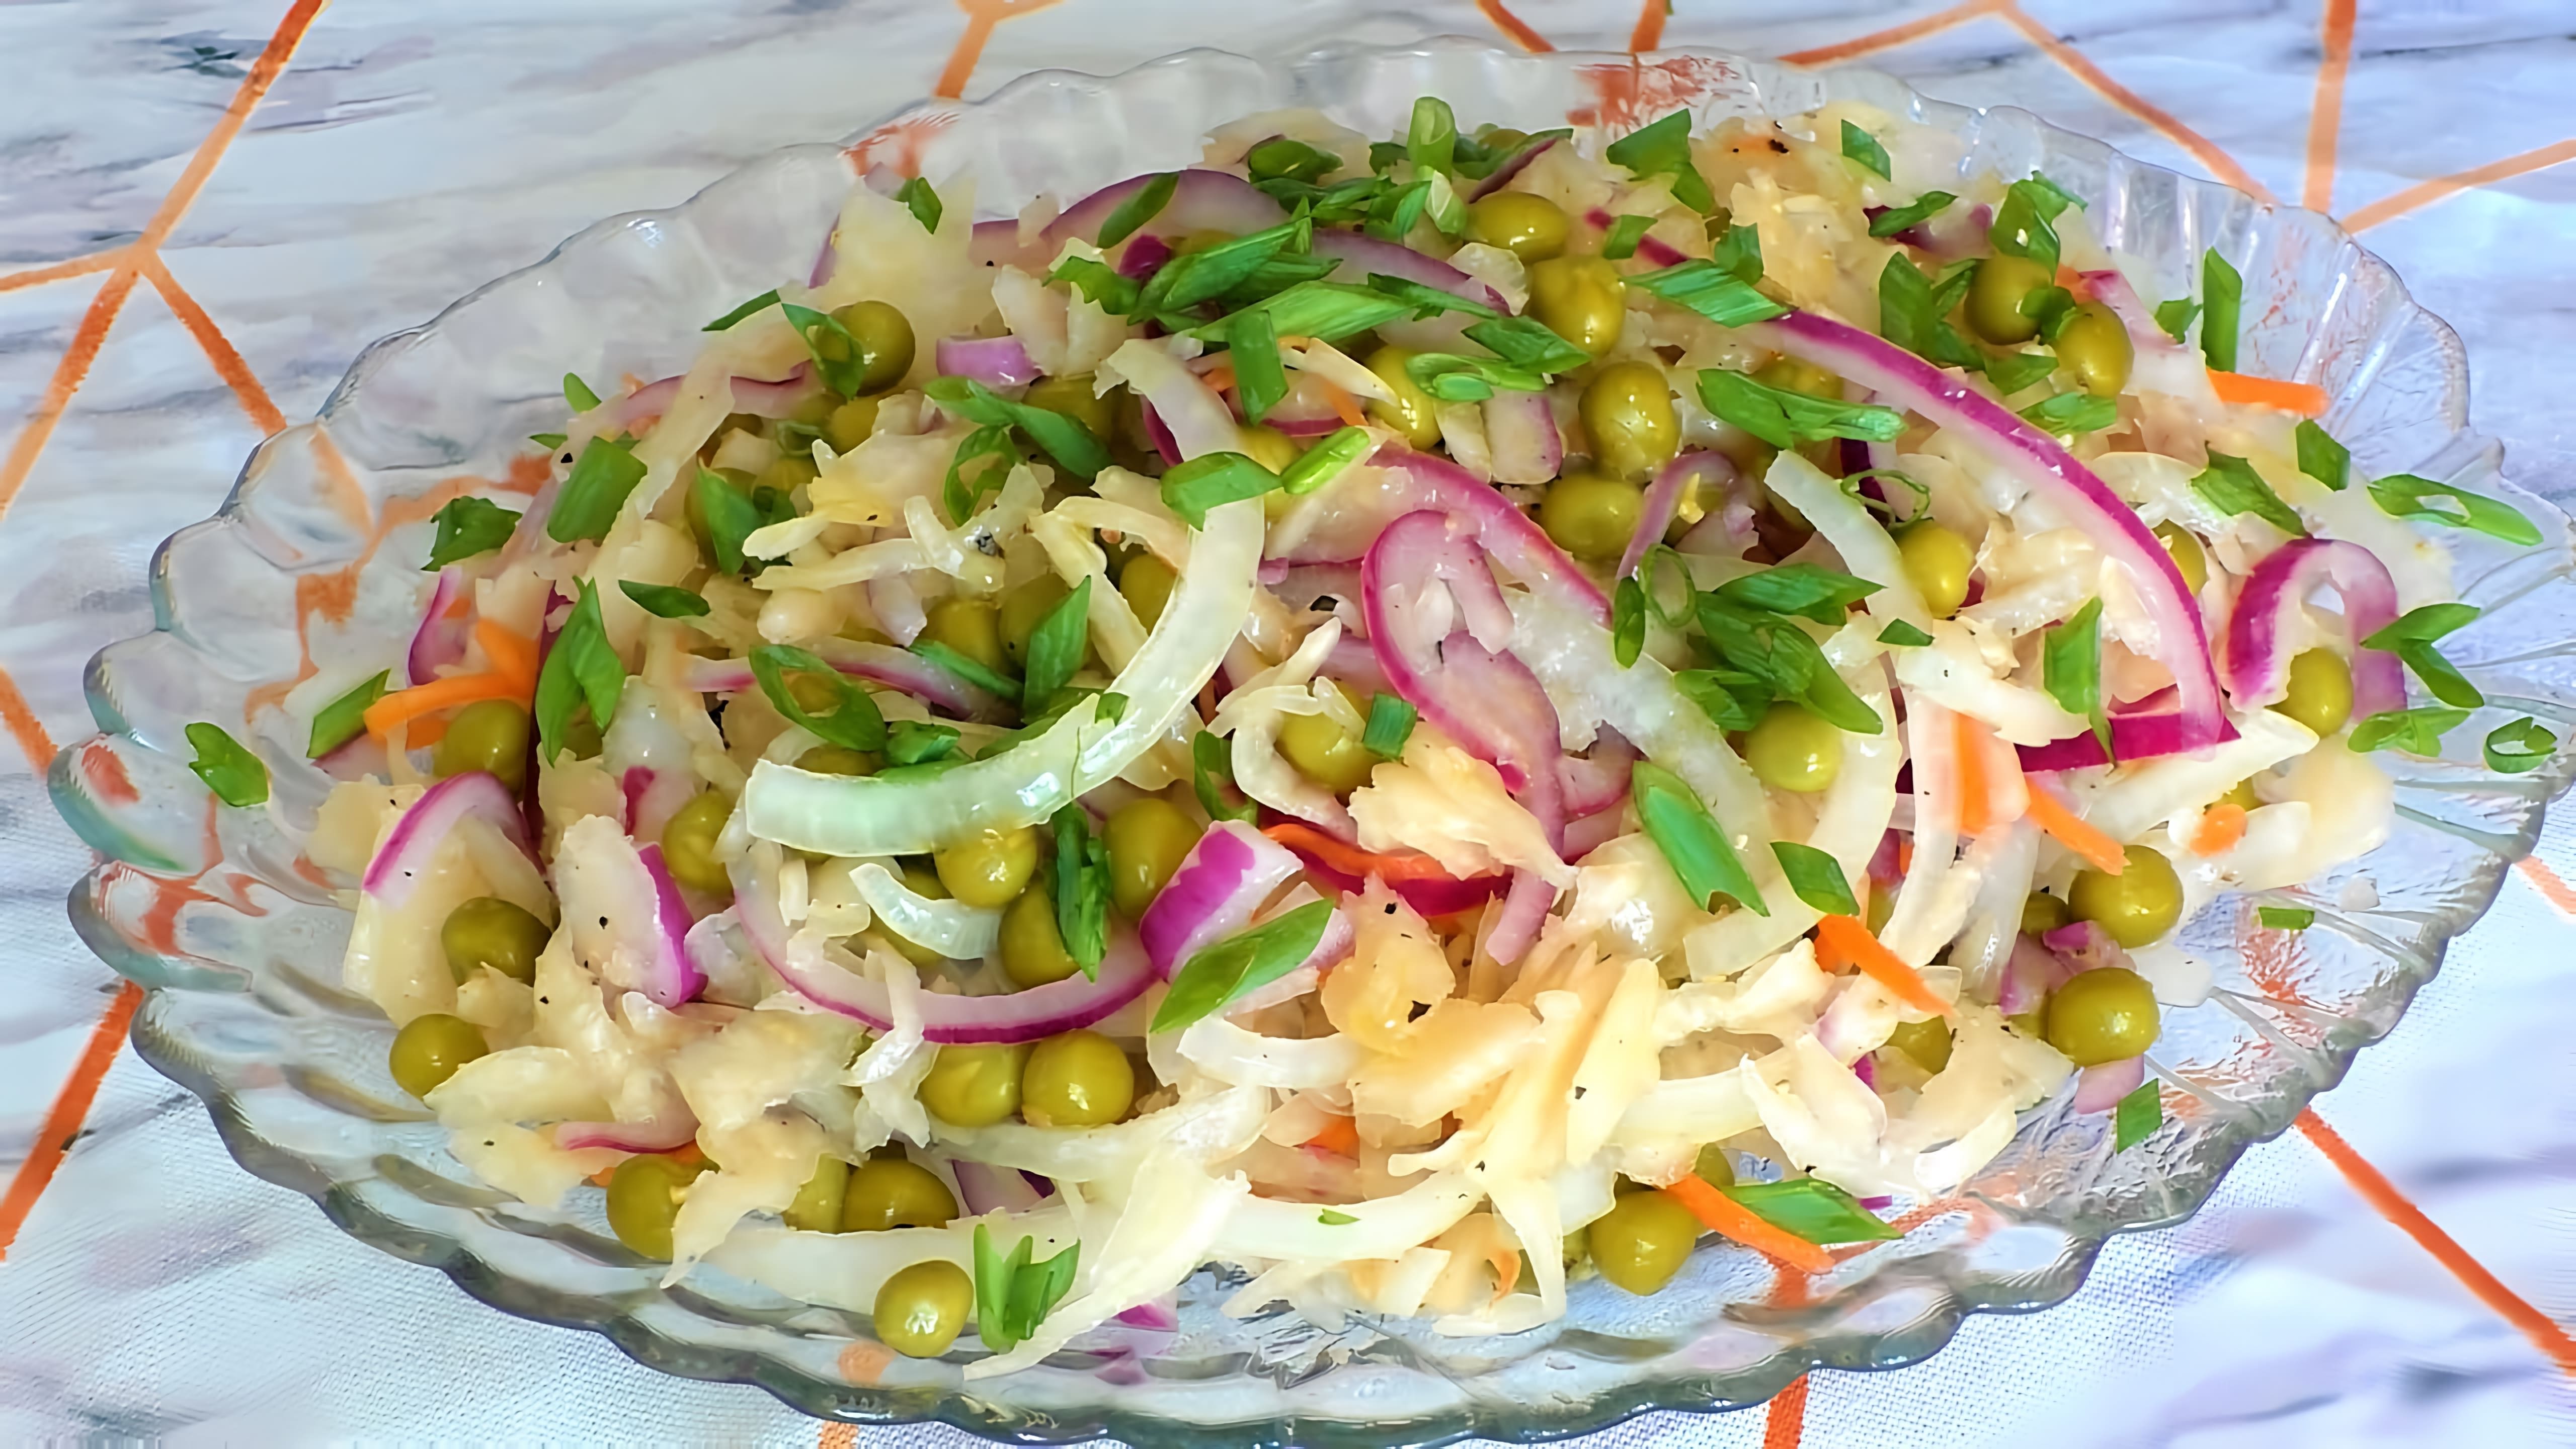 В этом видео демонстрируется процесс приготовления салата из квашеной капусты